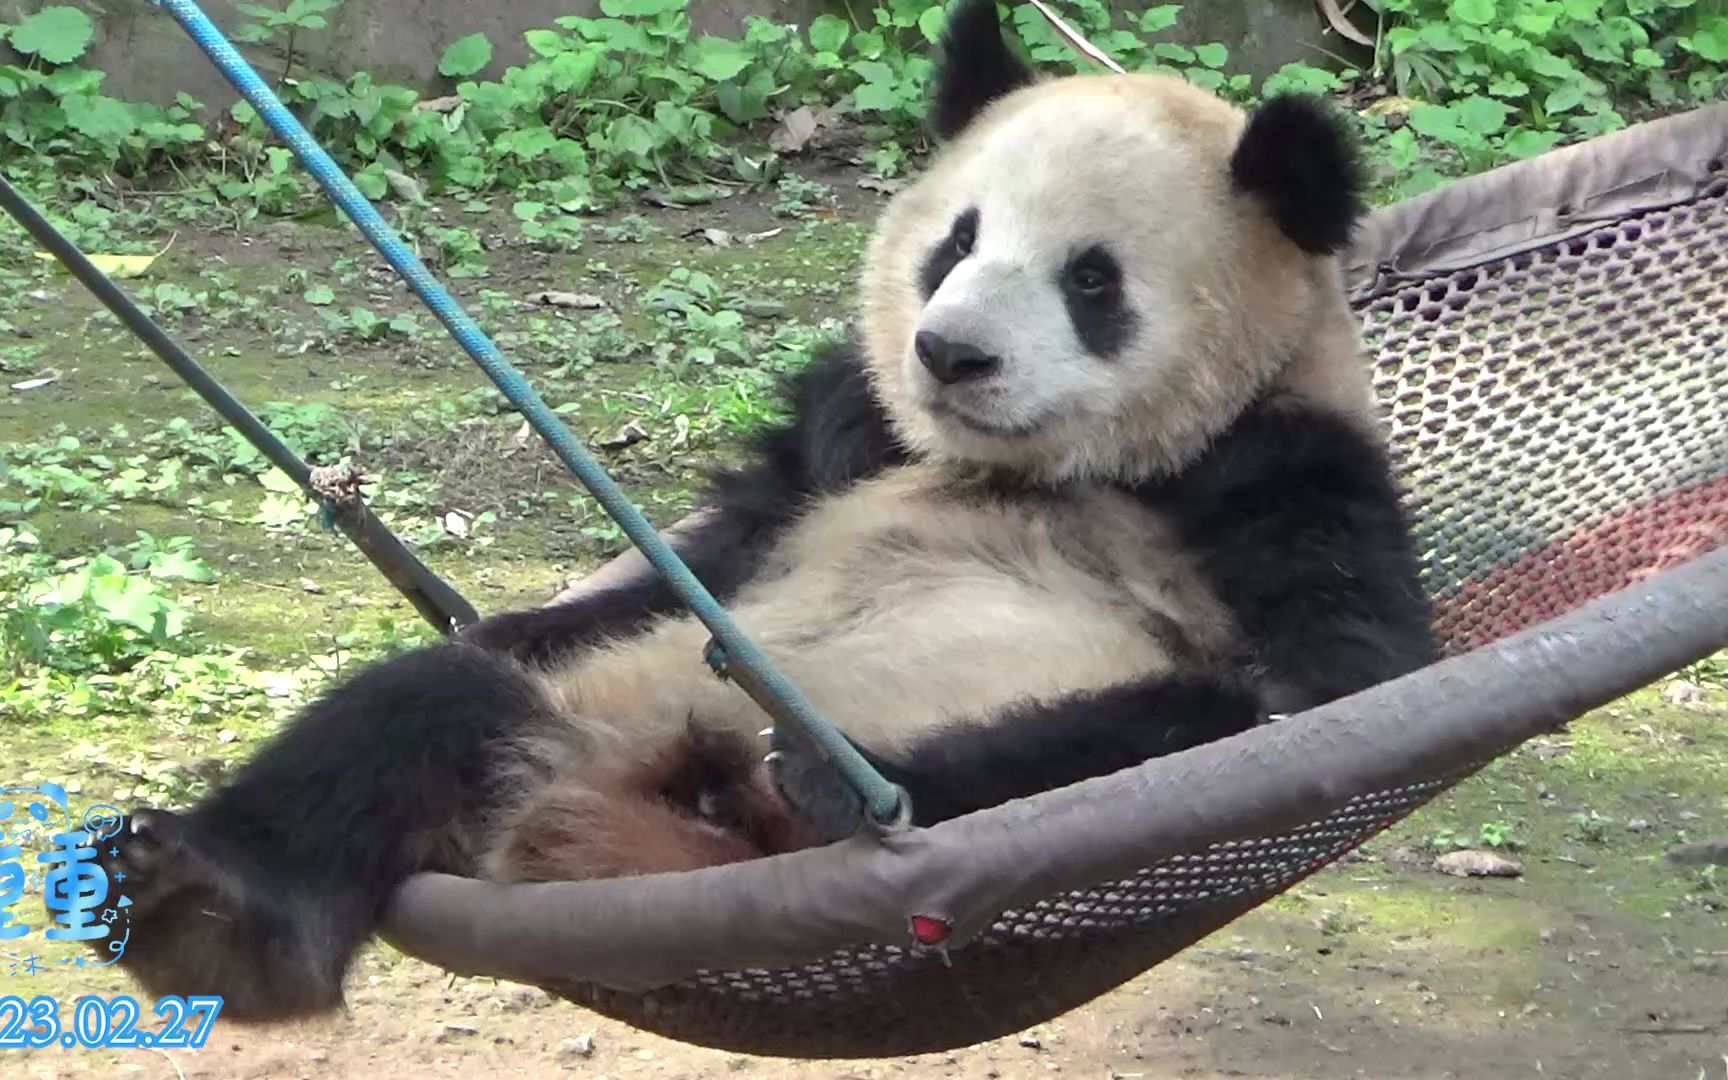 227大熊猫重重,在吊床营业的小可爱